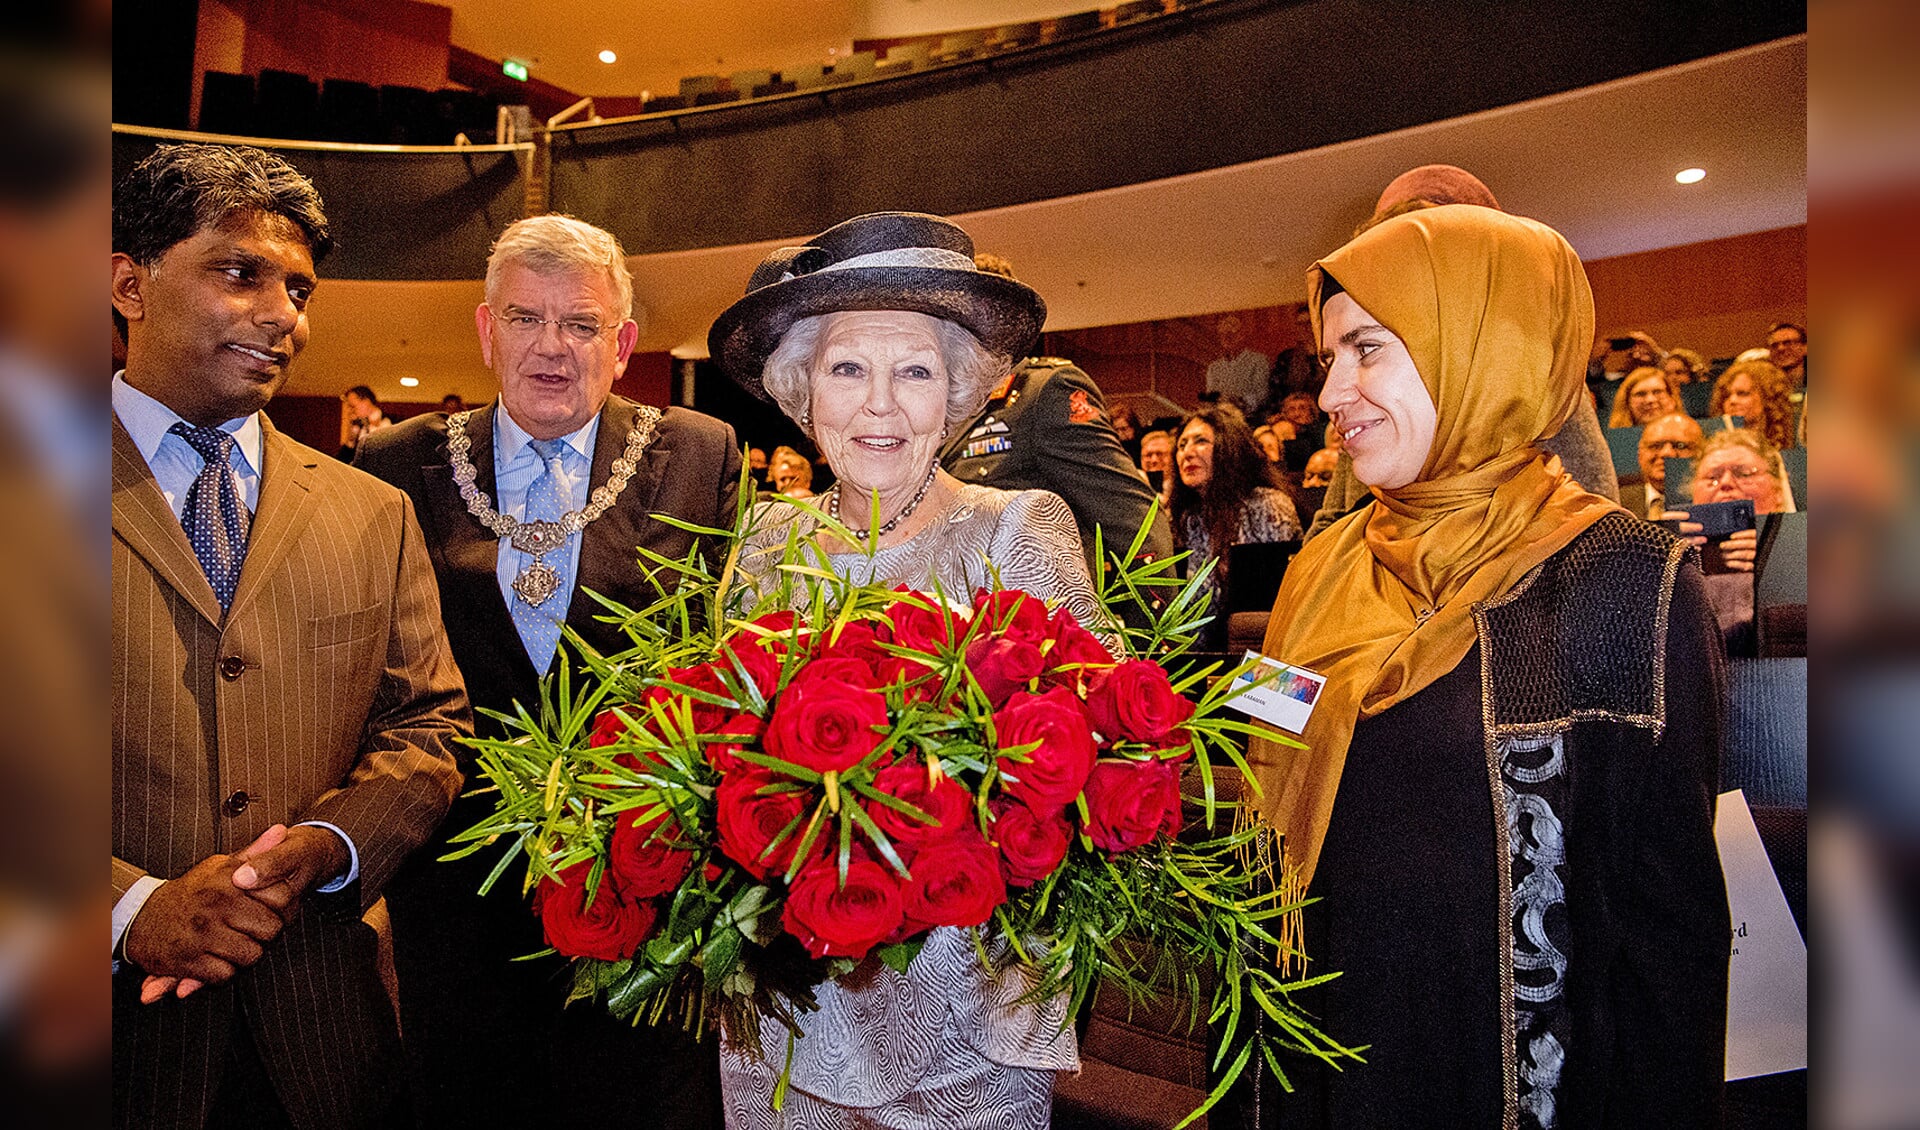 Prinses Beatrix was maandag in Utrecht aanwezig bij een symposium van het interreligieuze netwerk In Vrijheid Verbonden. Ze kreeg bloemen voor haar tachtigste verjaardag en sprak er over het thema ‘Een zorgzame samenleving’. In Vrijheid Verbonden is een groep mensen van verschillende religieuze achtergronden die zich inzet voor de democratie. <